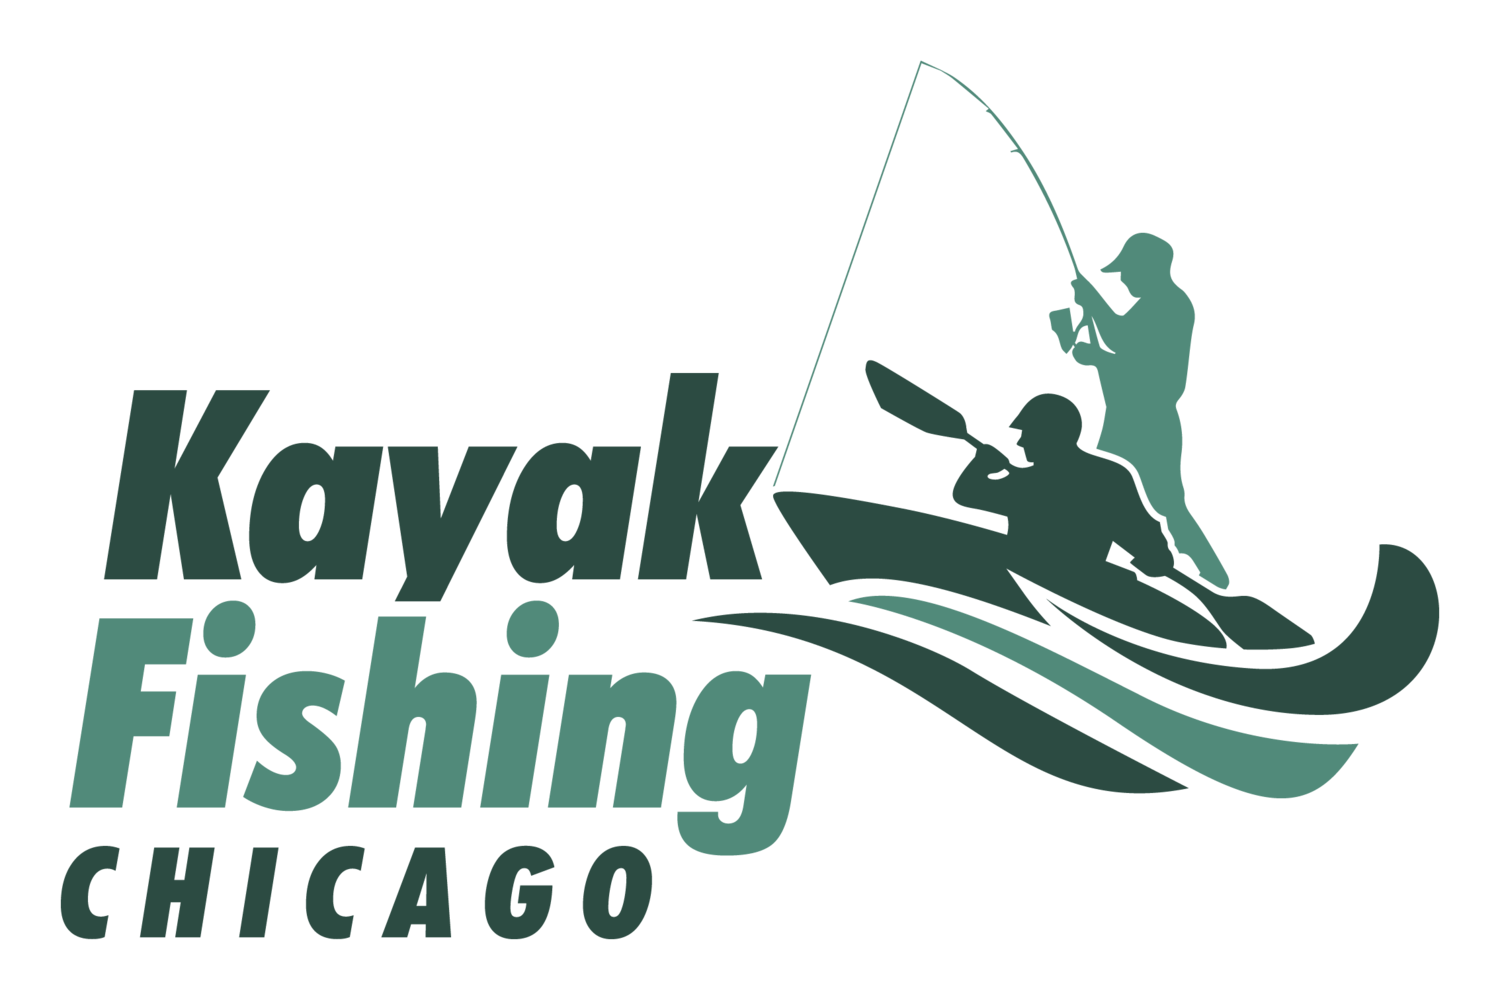 Kayak Fishing Chicago